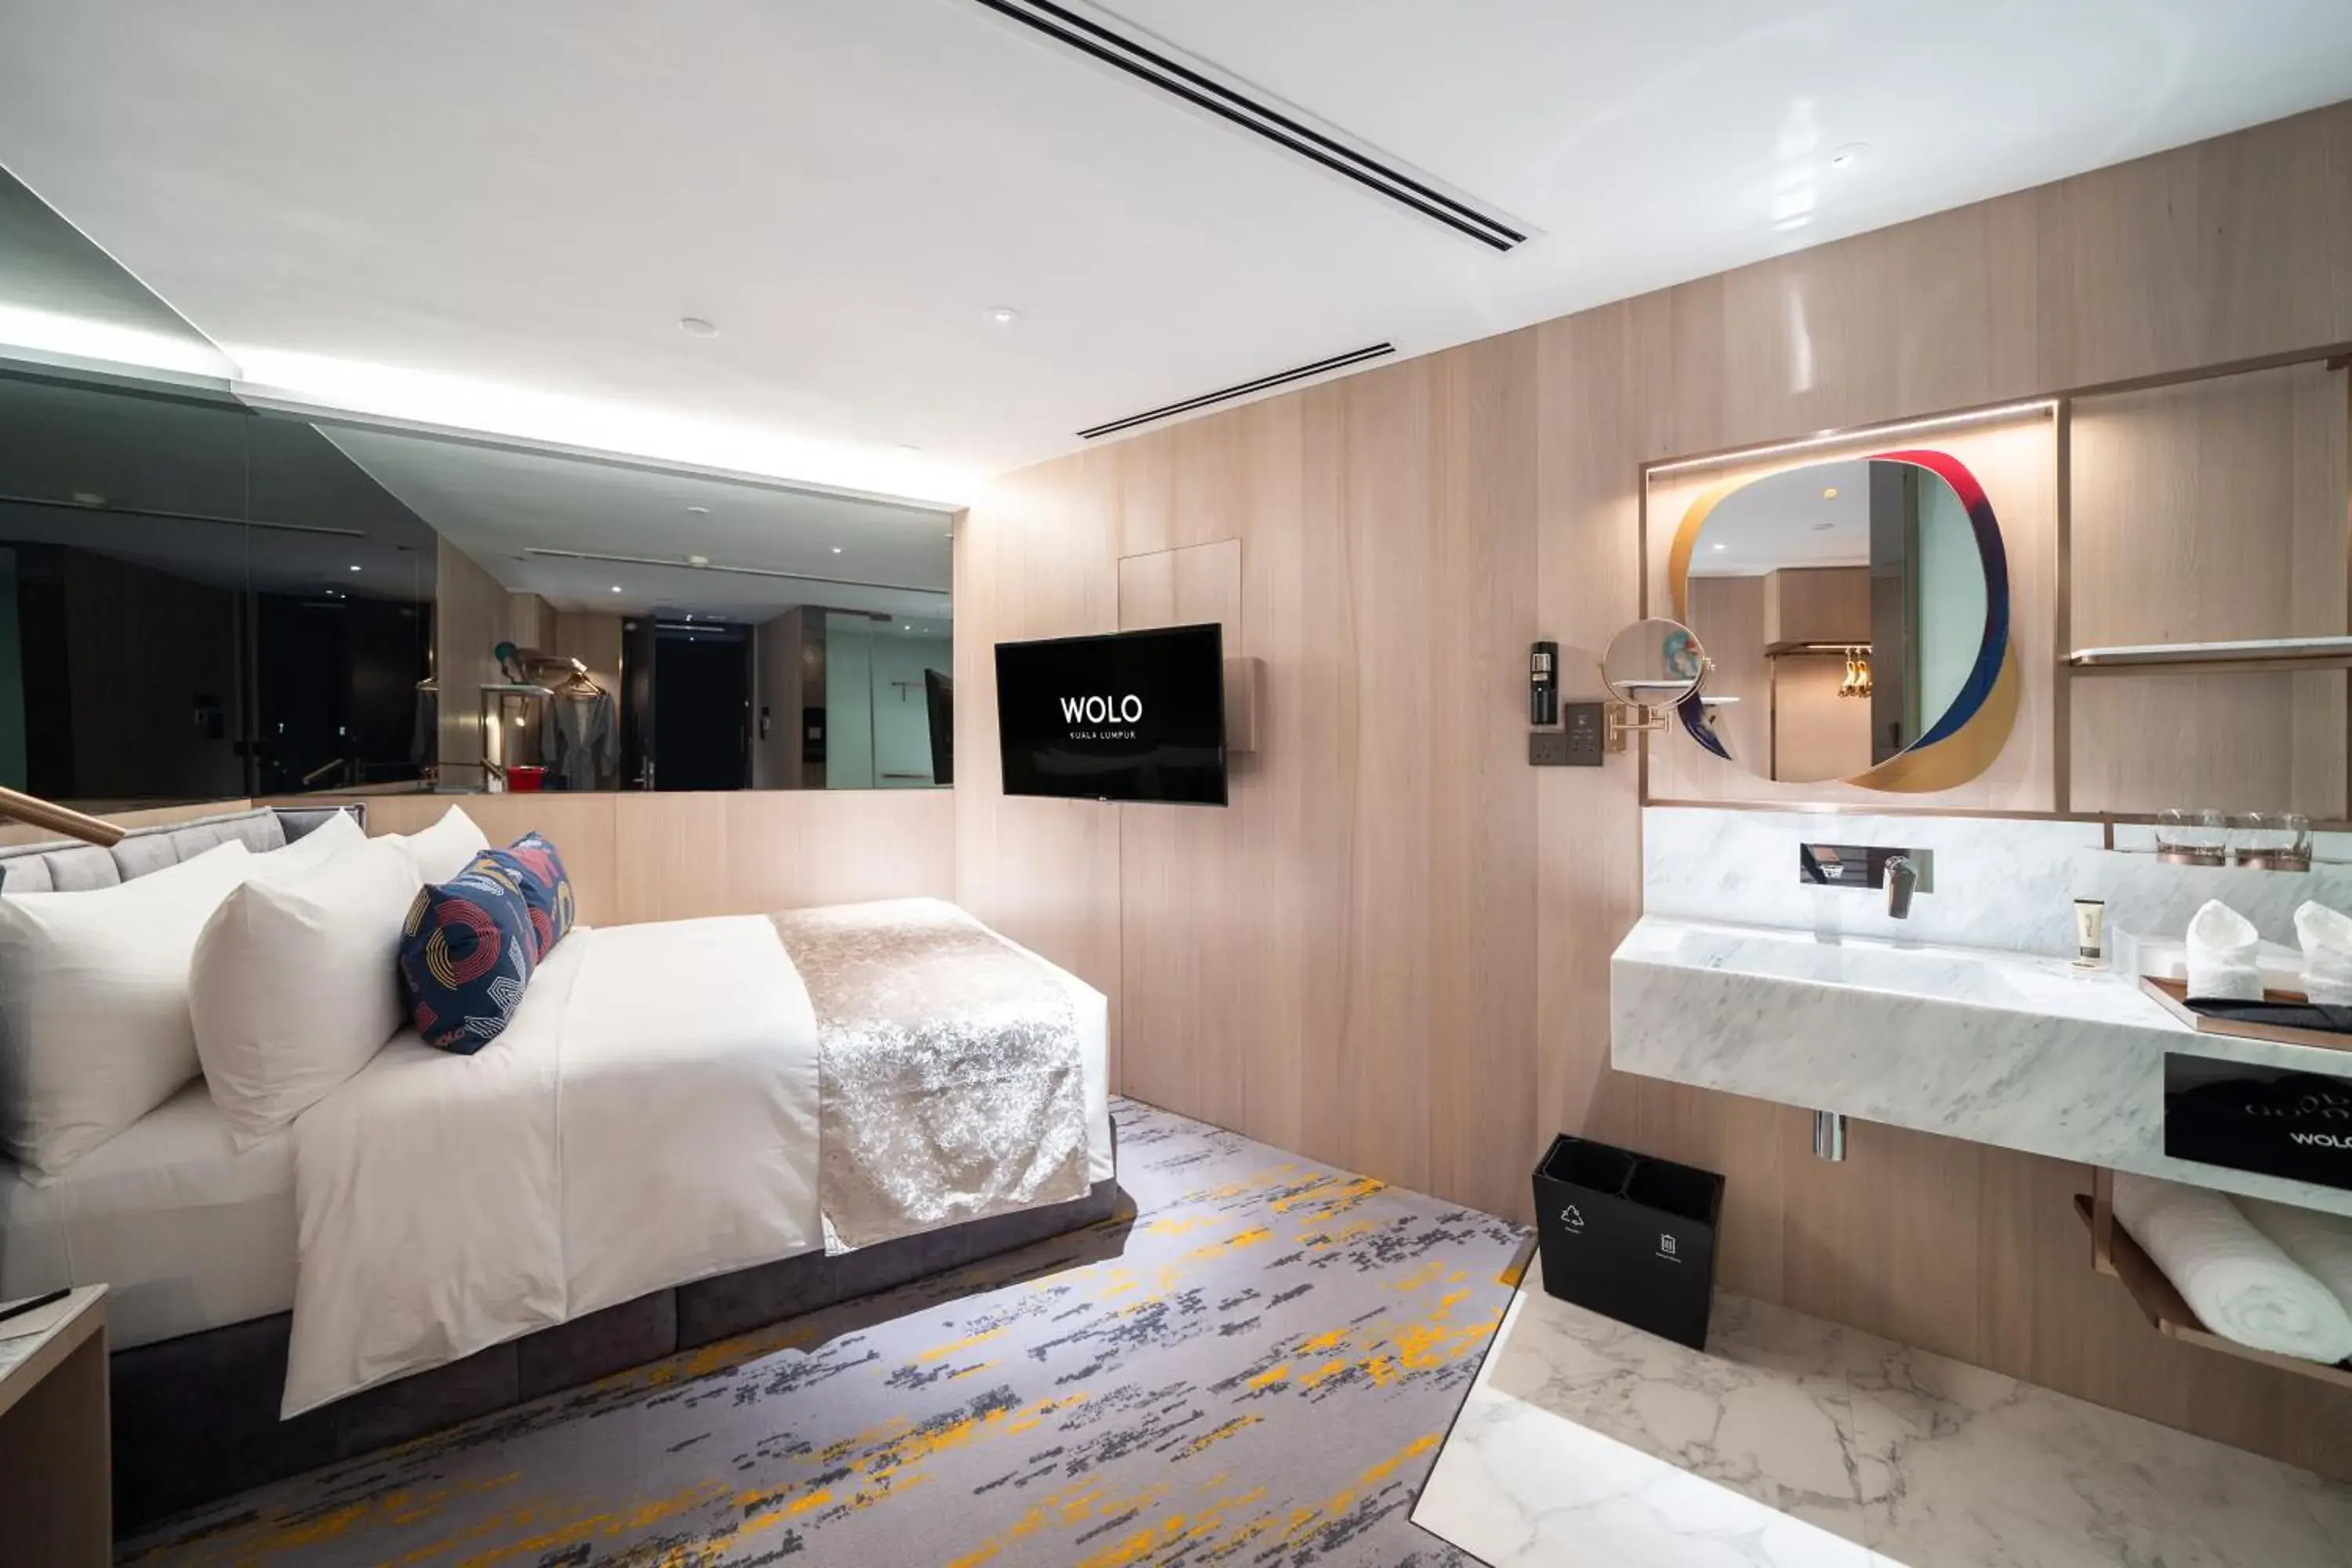 Bedroom, Bathroom in WOLO Kuala Lumpur